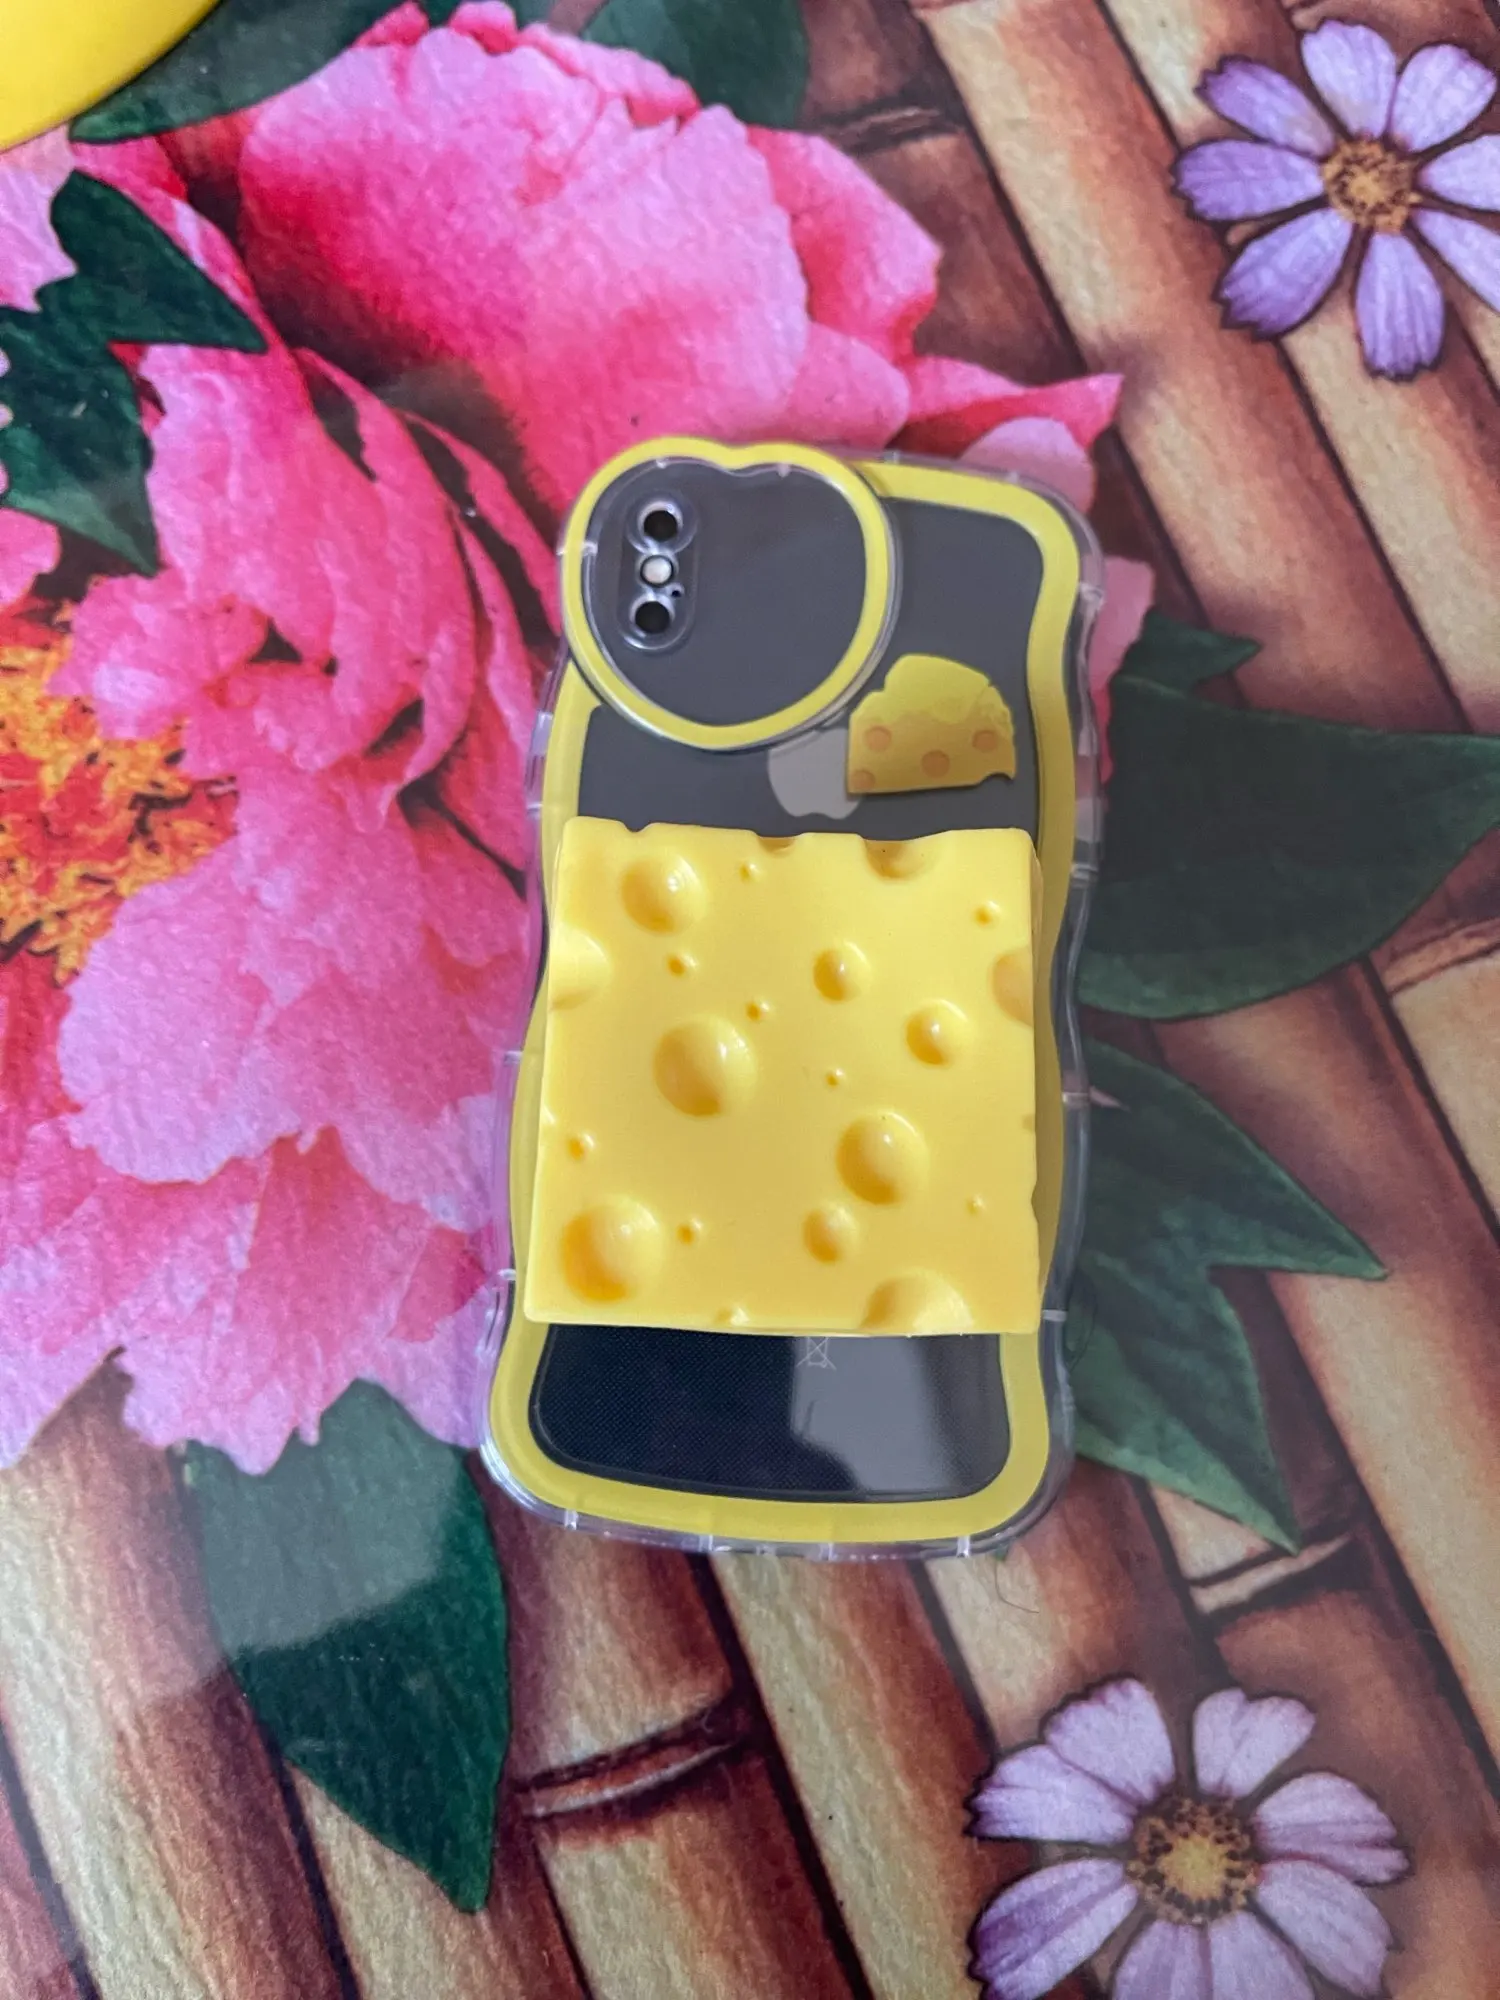 3D 크리에이티브 치즈 아이폰 케이스